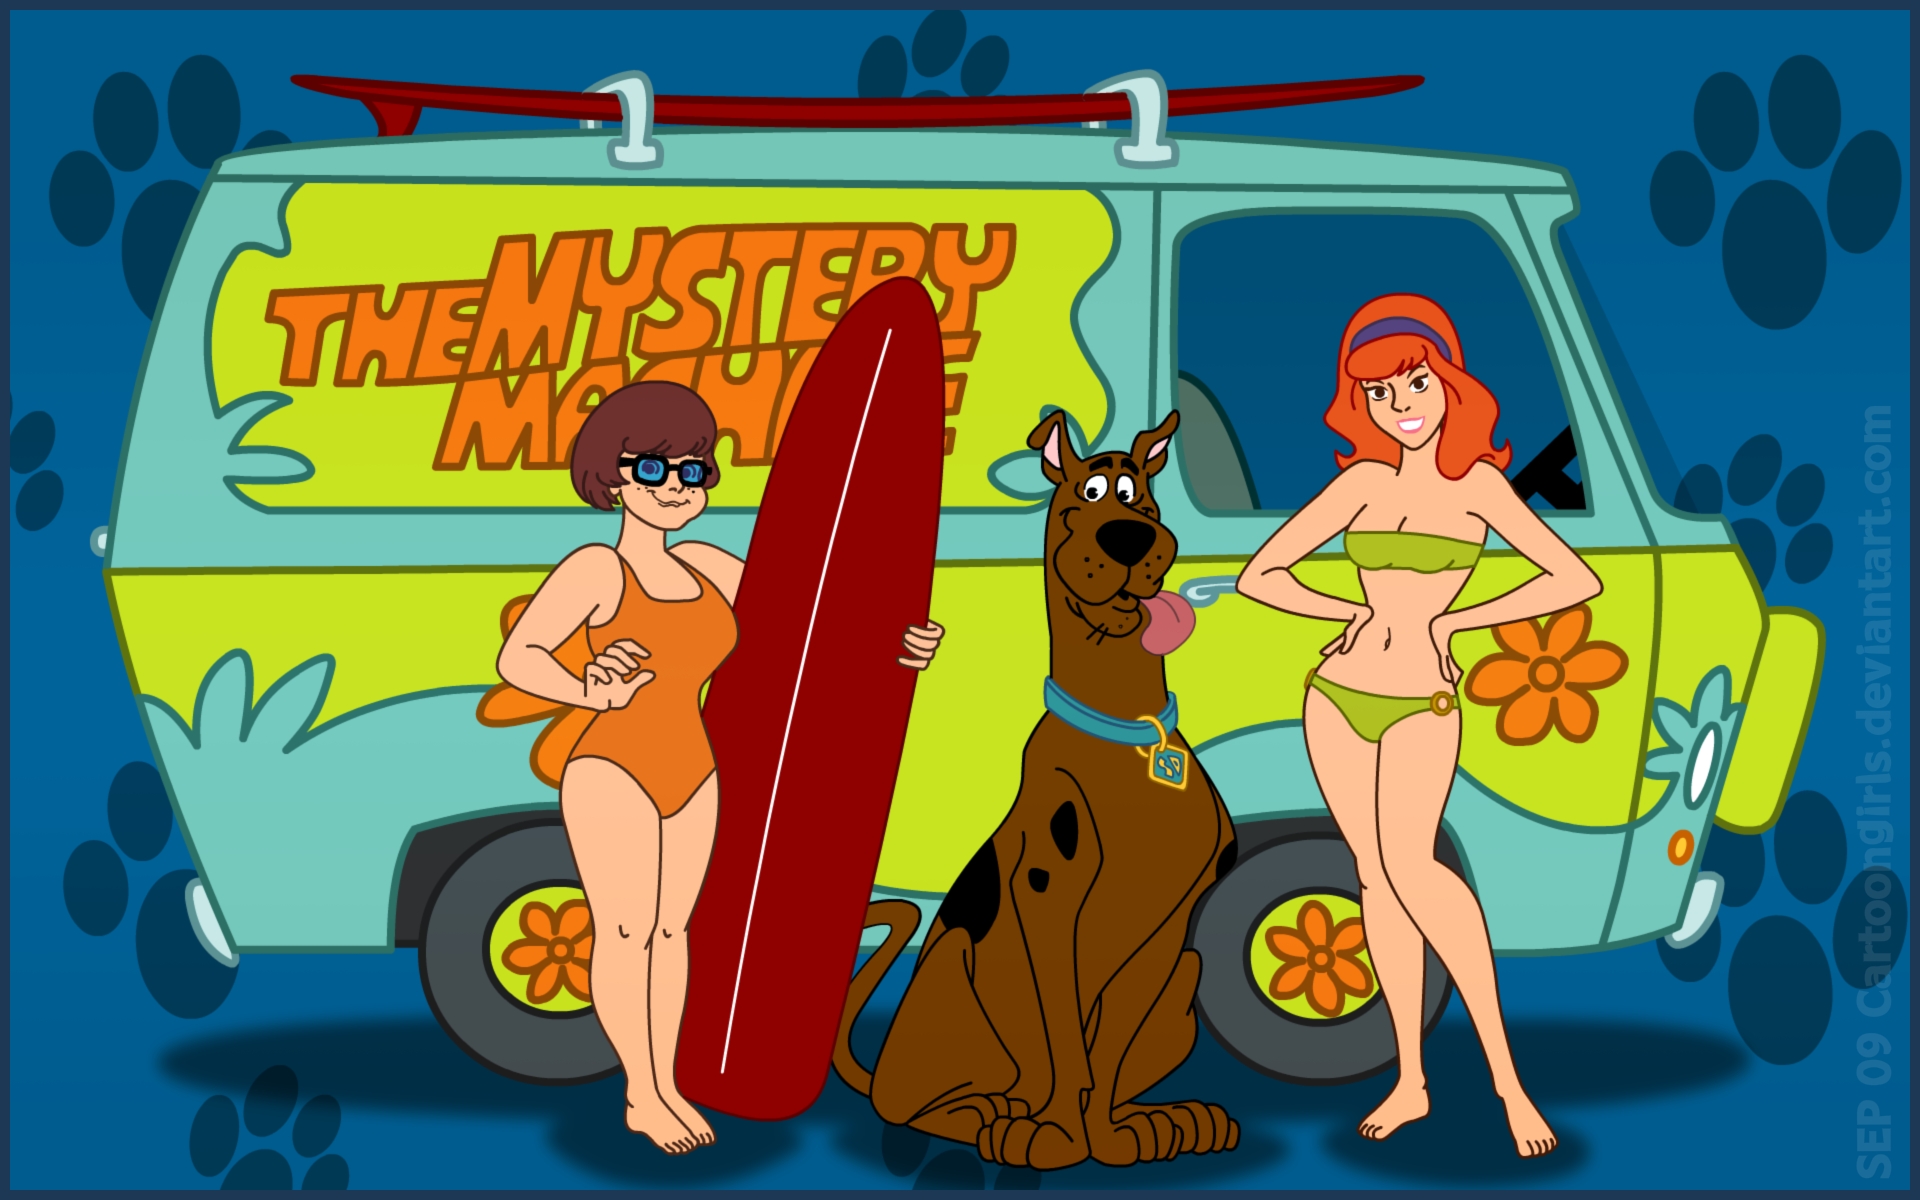 мультфильмы, девушки, Велма, Scooby Doo, волчеягодник, купальники - обои на рабочий стол